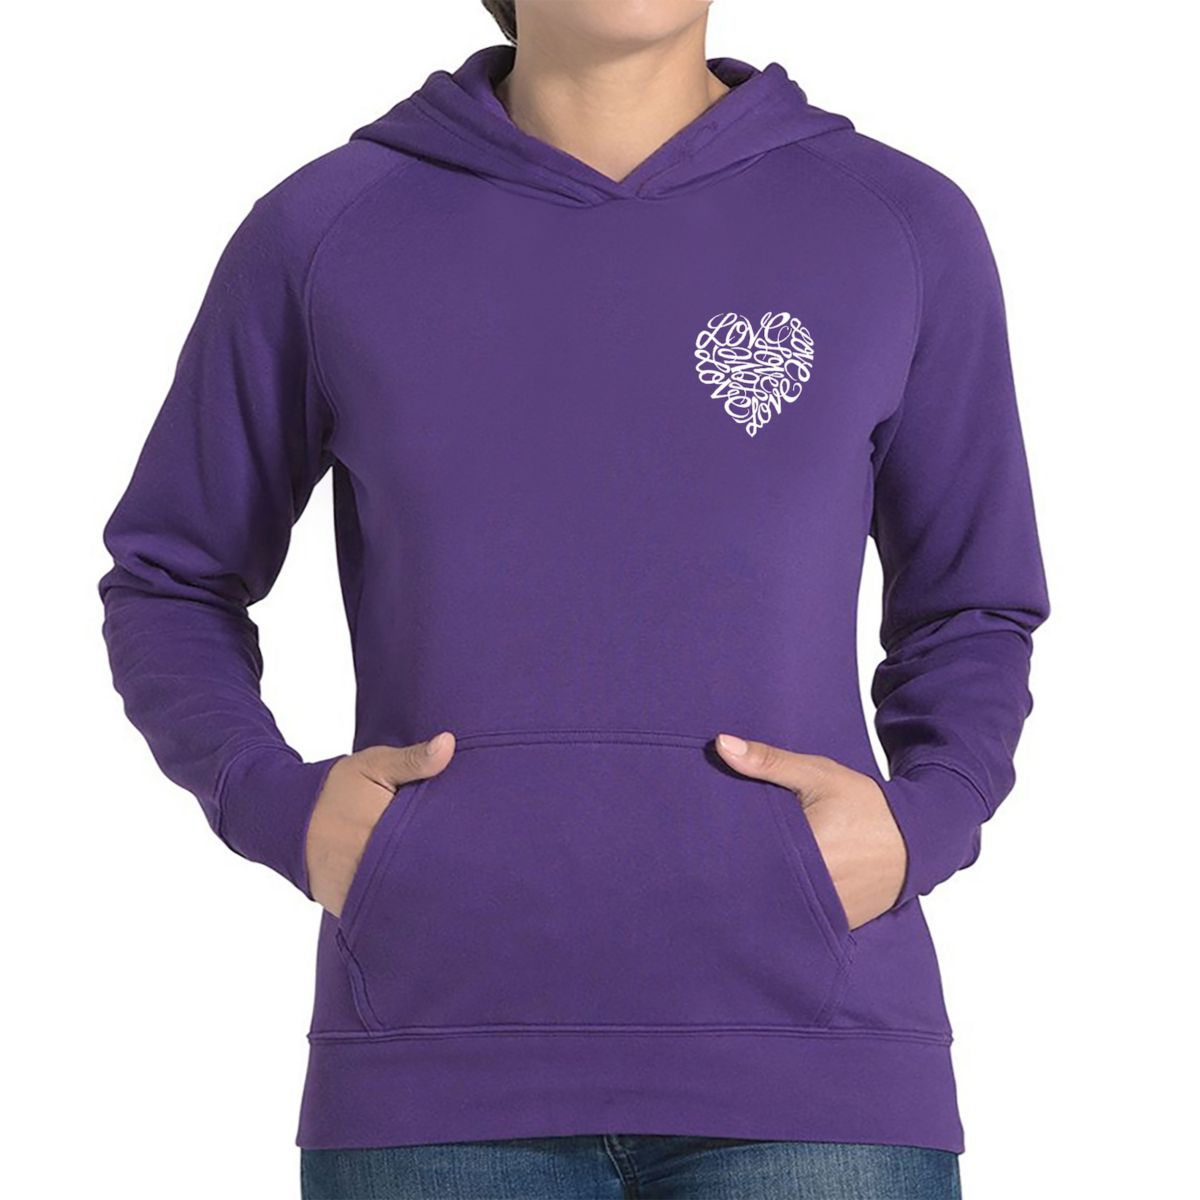 Cursive Heart - Women's Word Art Hooded Sweatshirt LA Pop Art